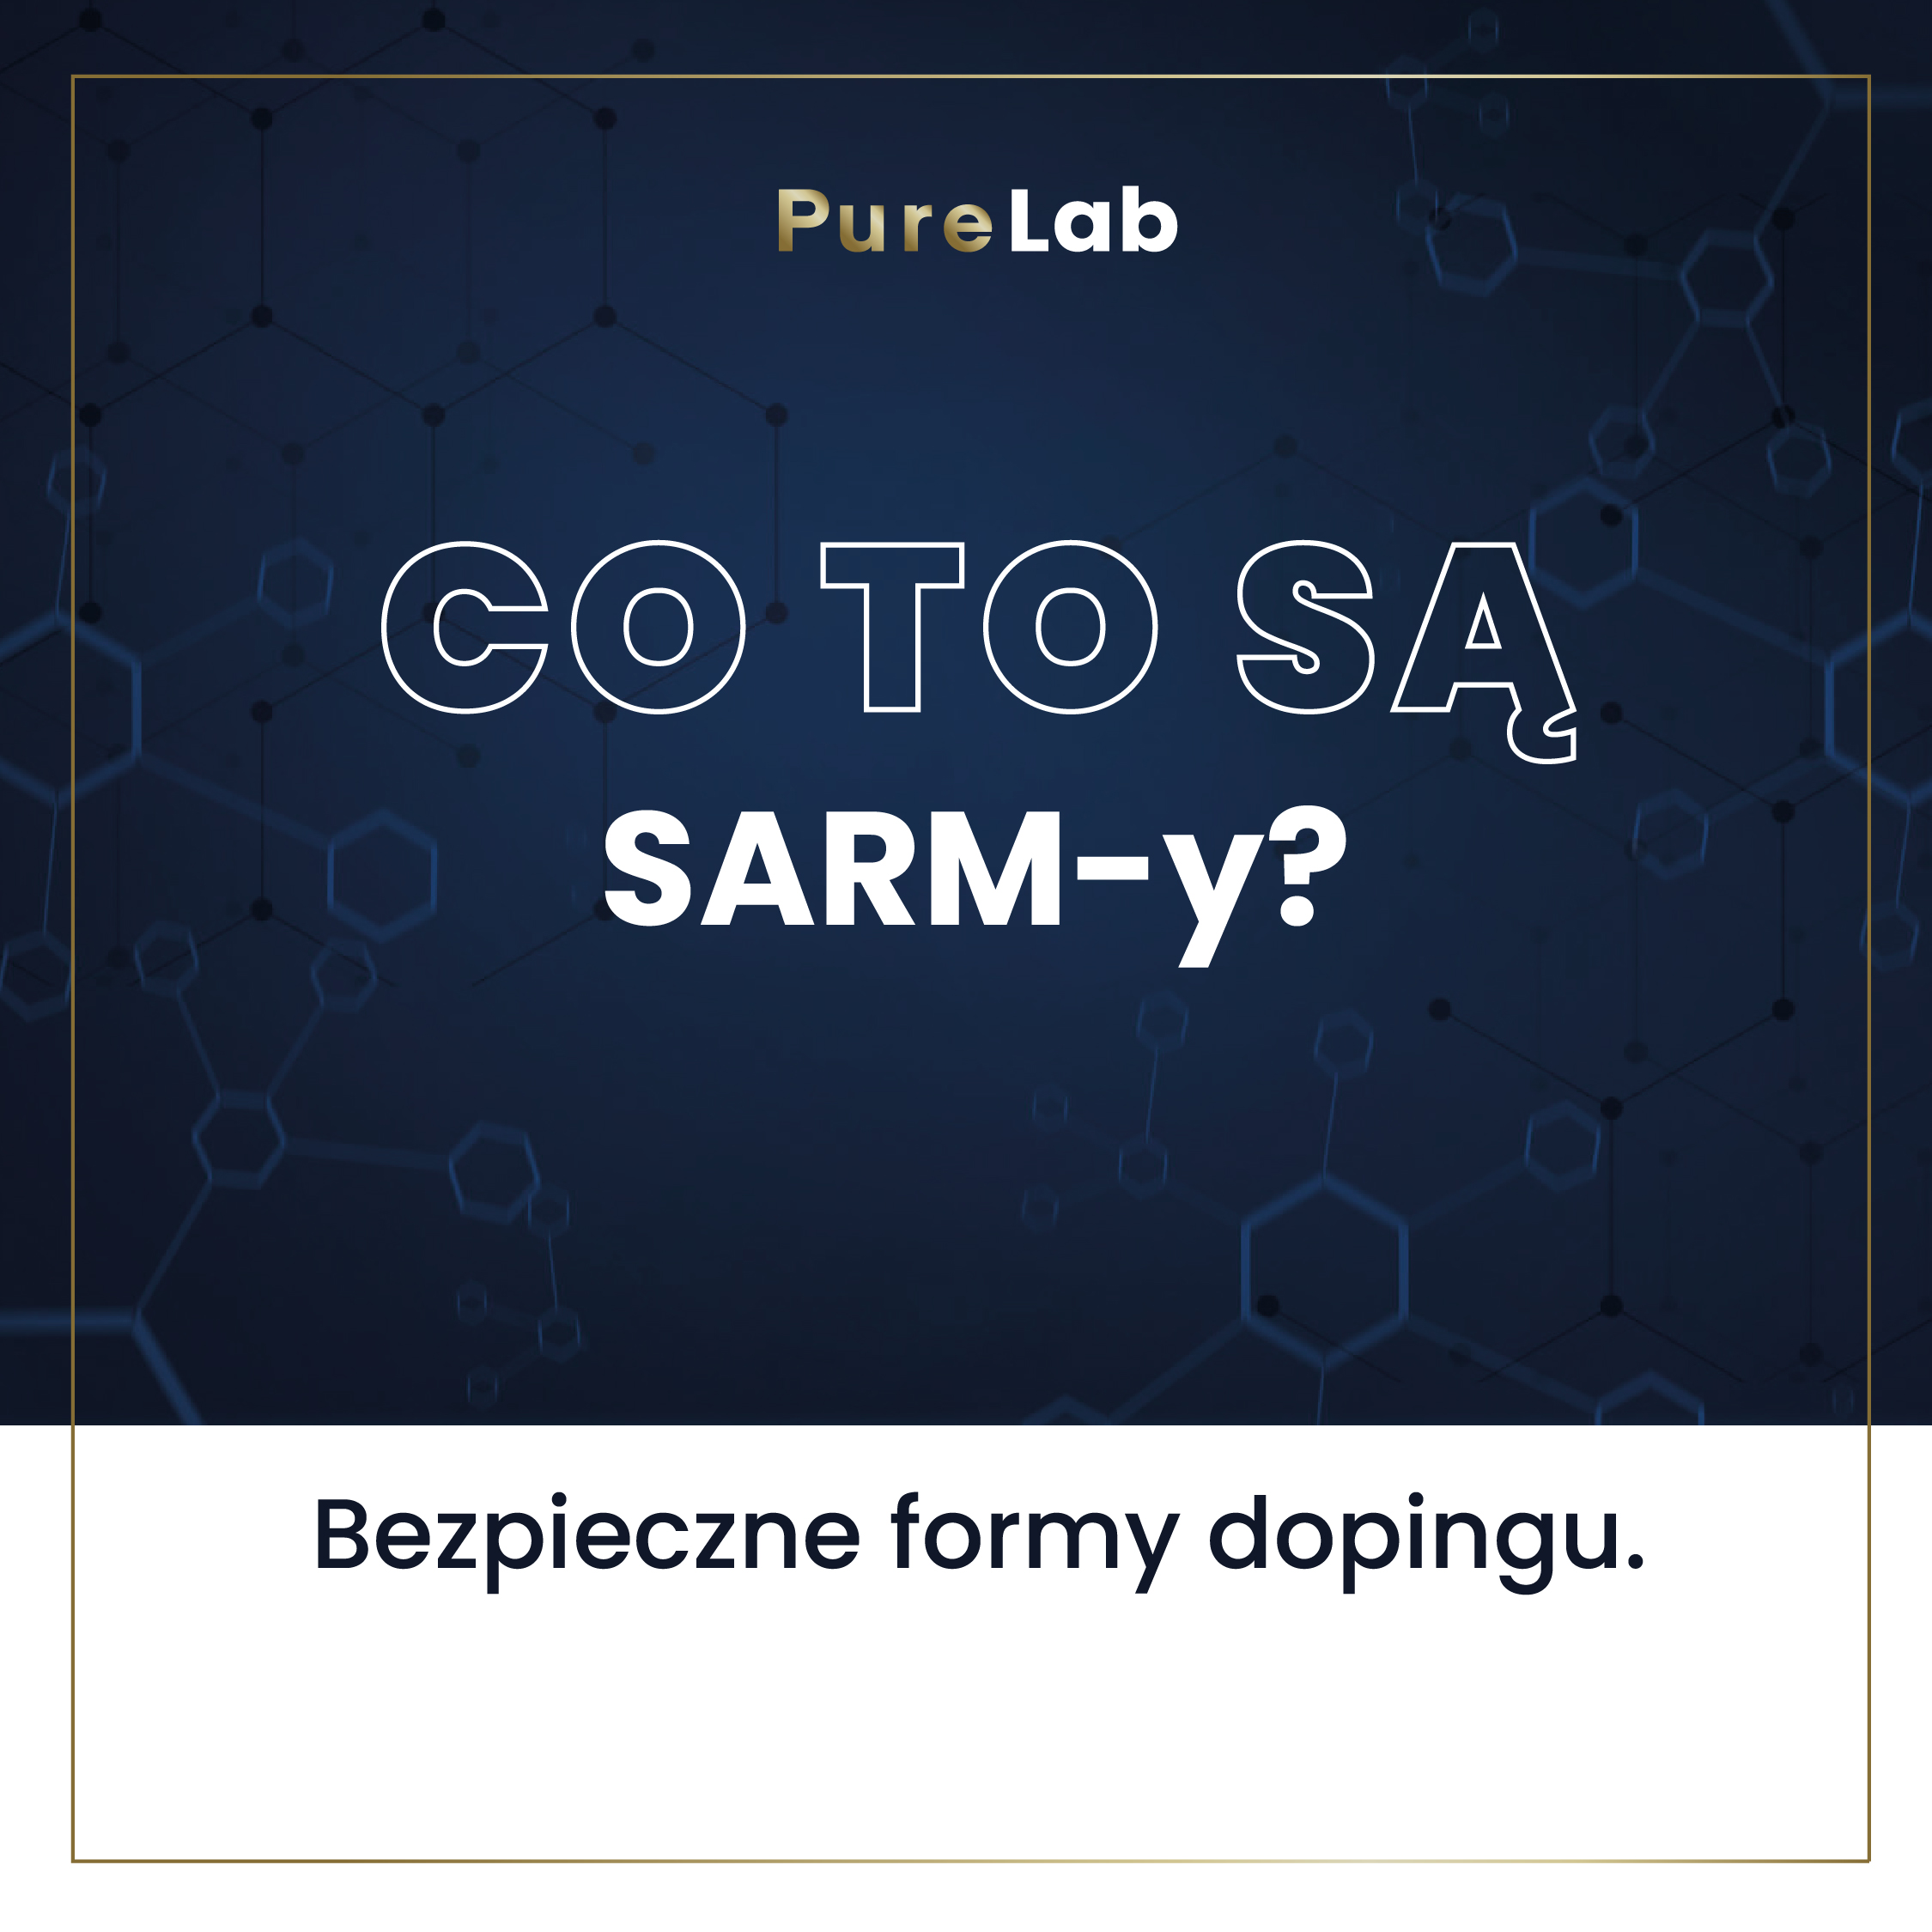 Co to są SARM-y?